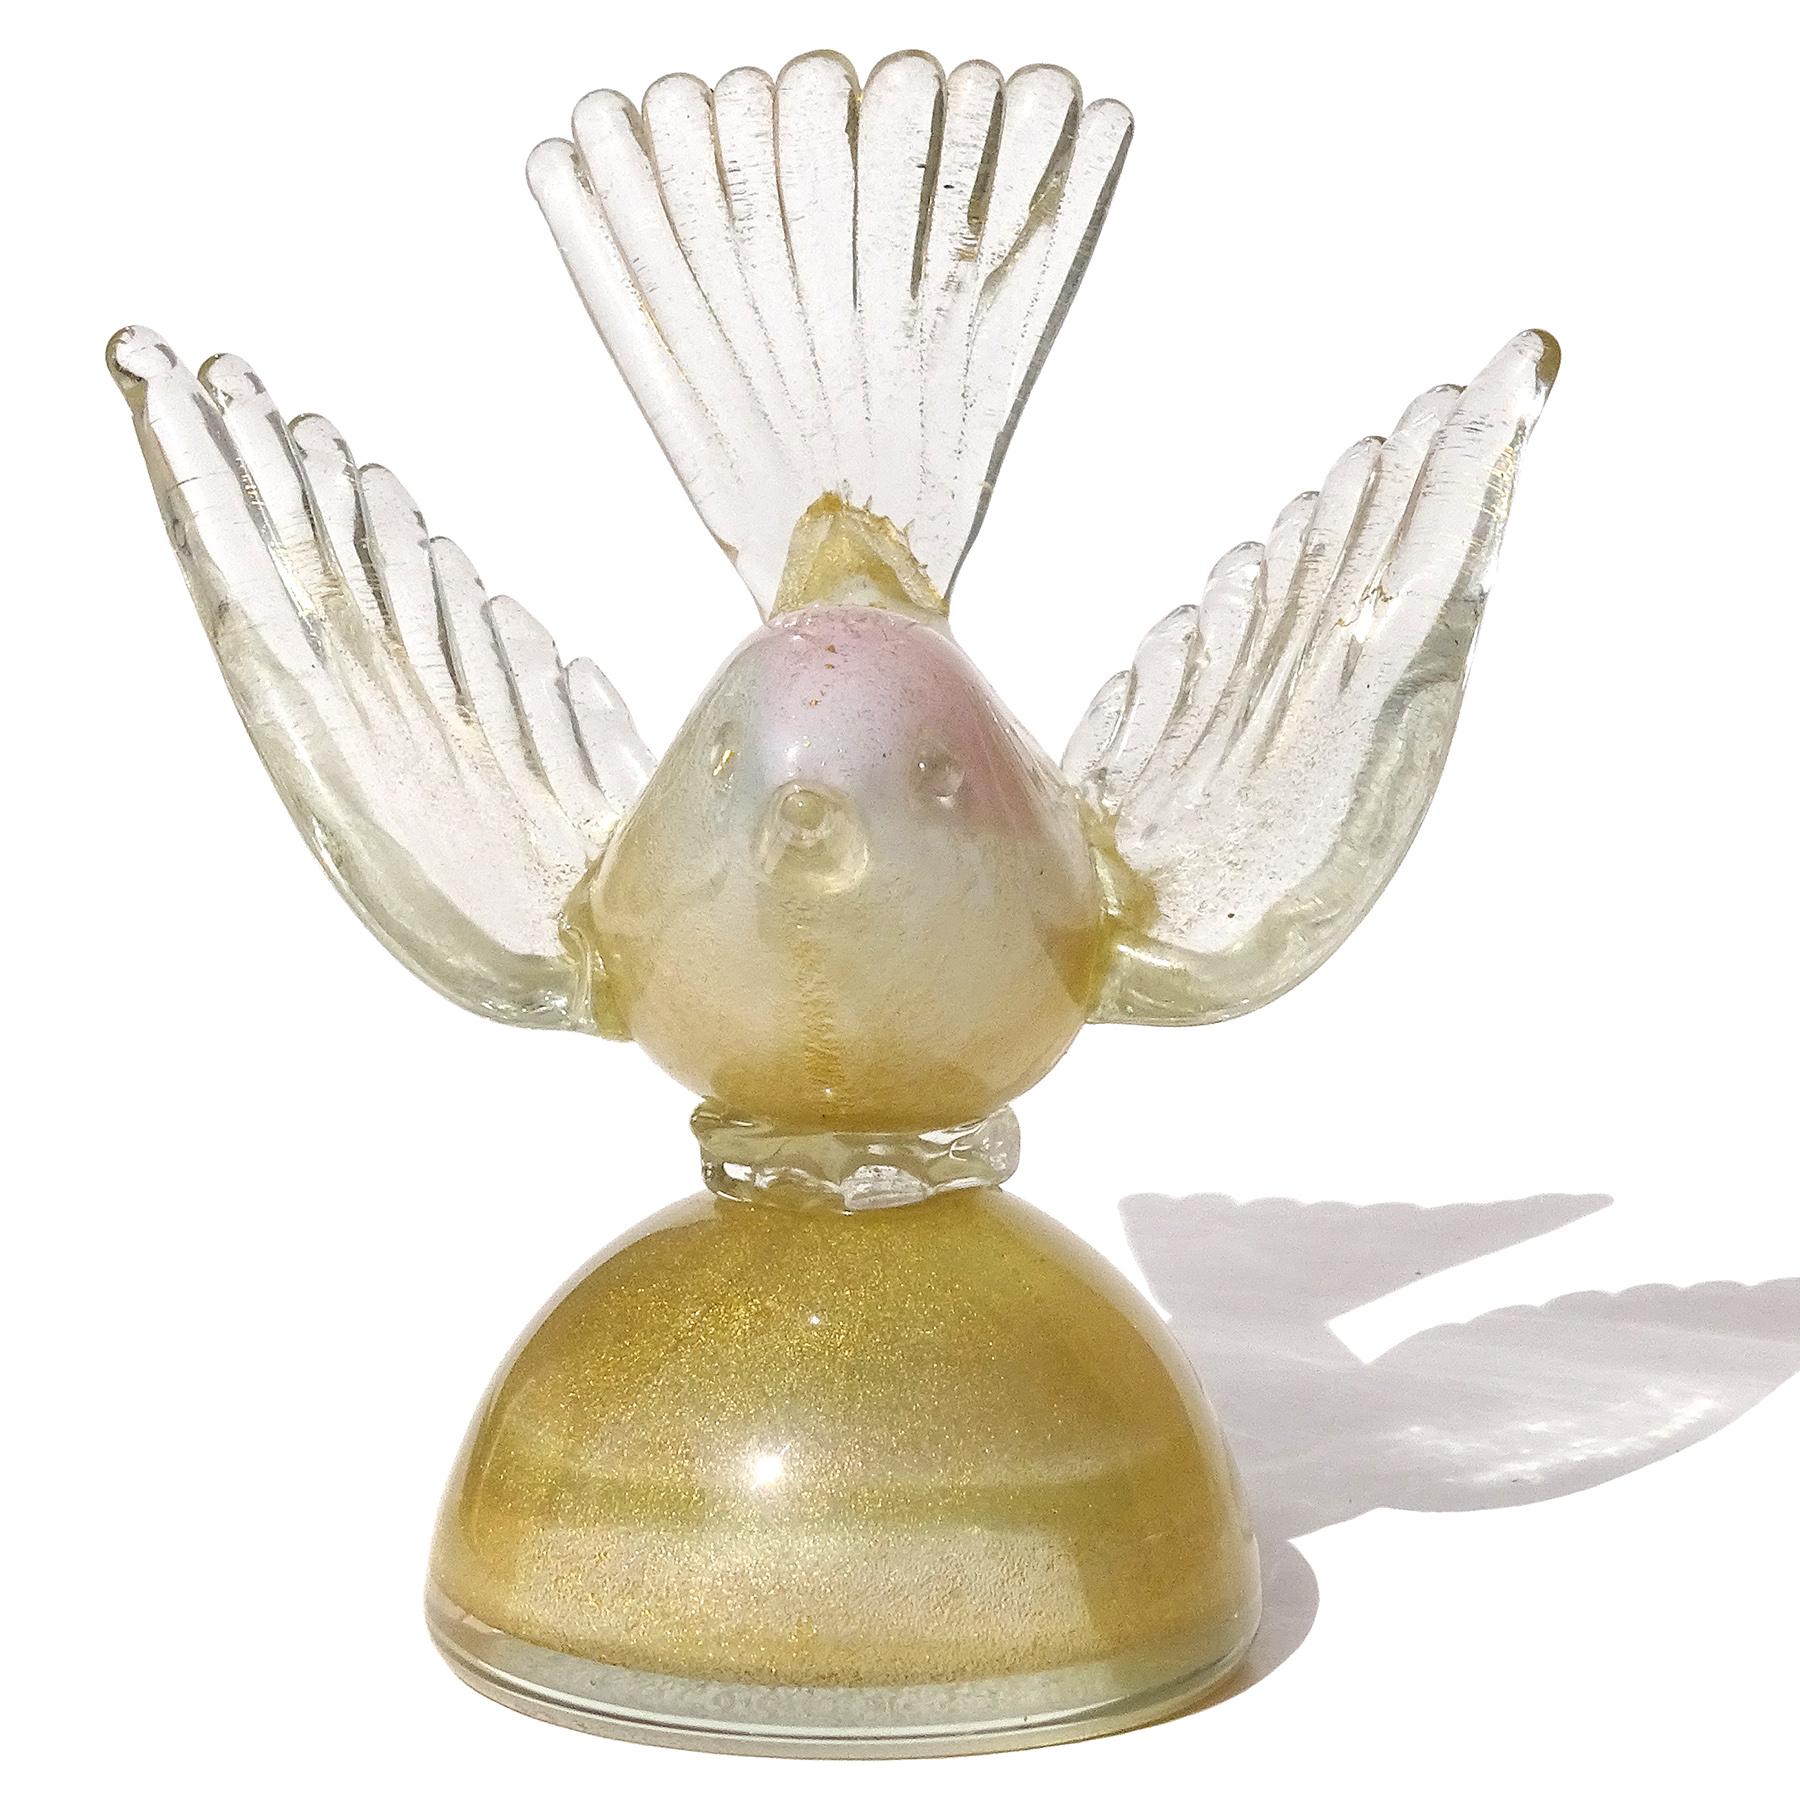 Schöne Vintage Murano mundgeblasen weiß, rosa und Goldflecken italienische Kunst Glas Vogel auf Basis Figur, Briefbeschwerer. Dokumentiert für den Designer Alfredo Barbini, ca. 1950-60er Jahre. Der Vogel hat einen rosafarbenen Fleck auf dem Kopf,